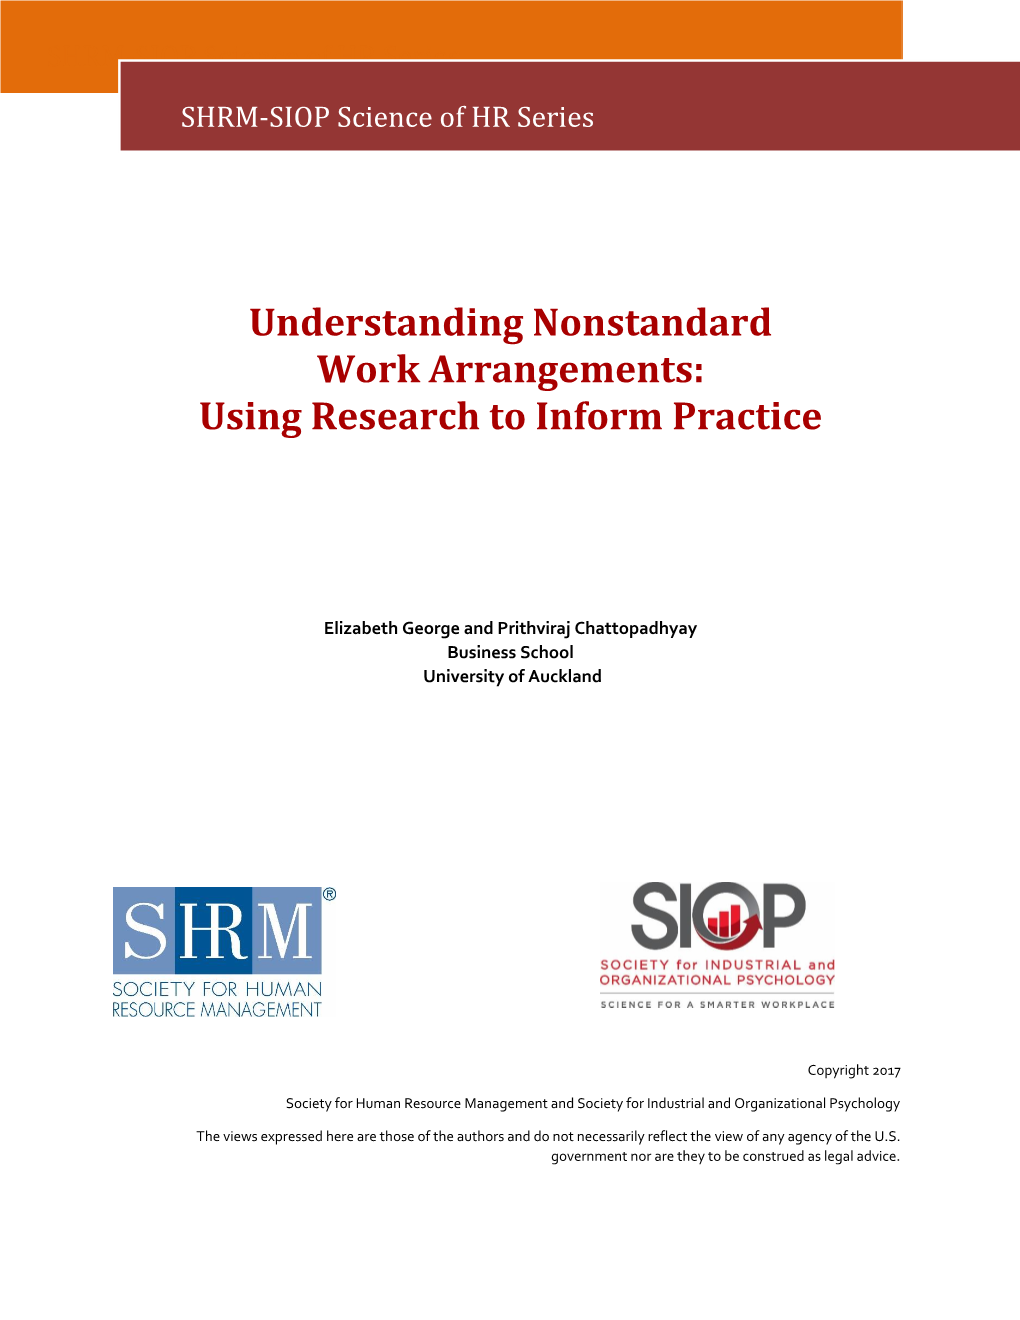 Understanding Nonstandard Work Arrangements: Using Research to Inform Practice